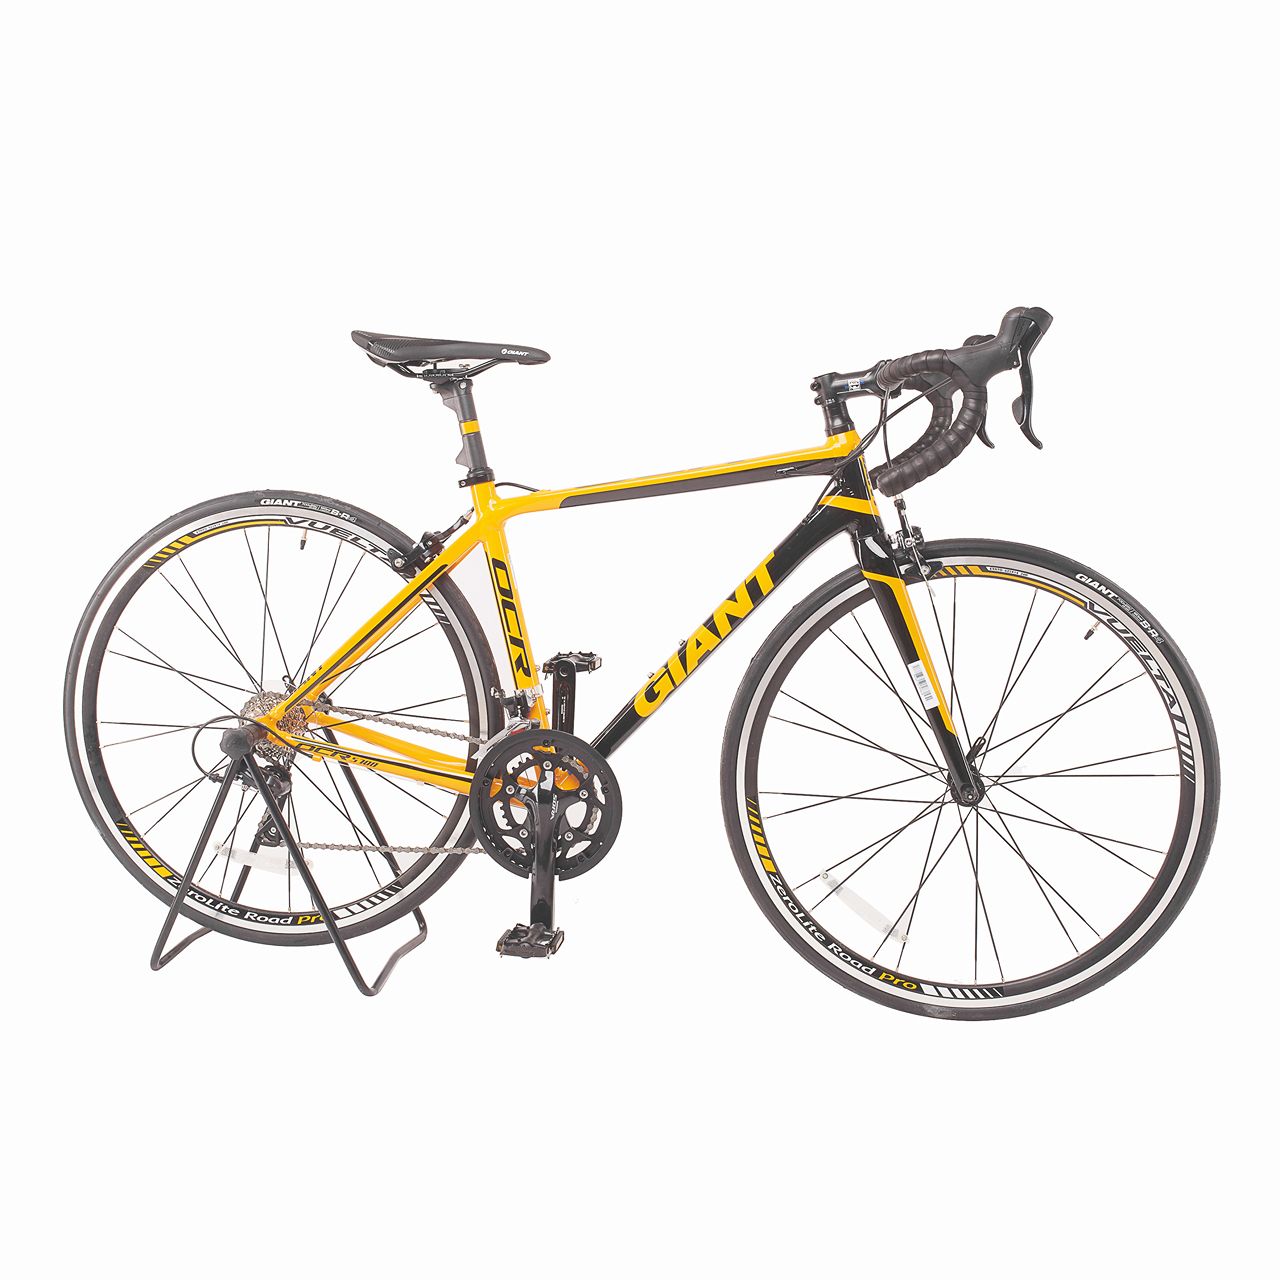 Xe đạp thể thao đua OCR 5700 2016